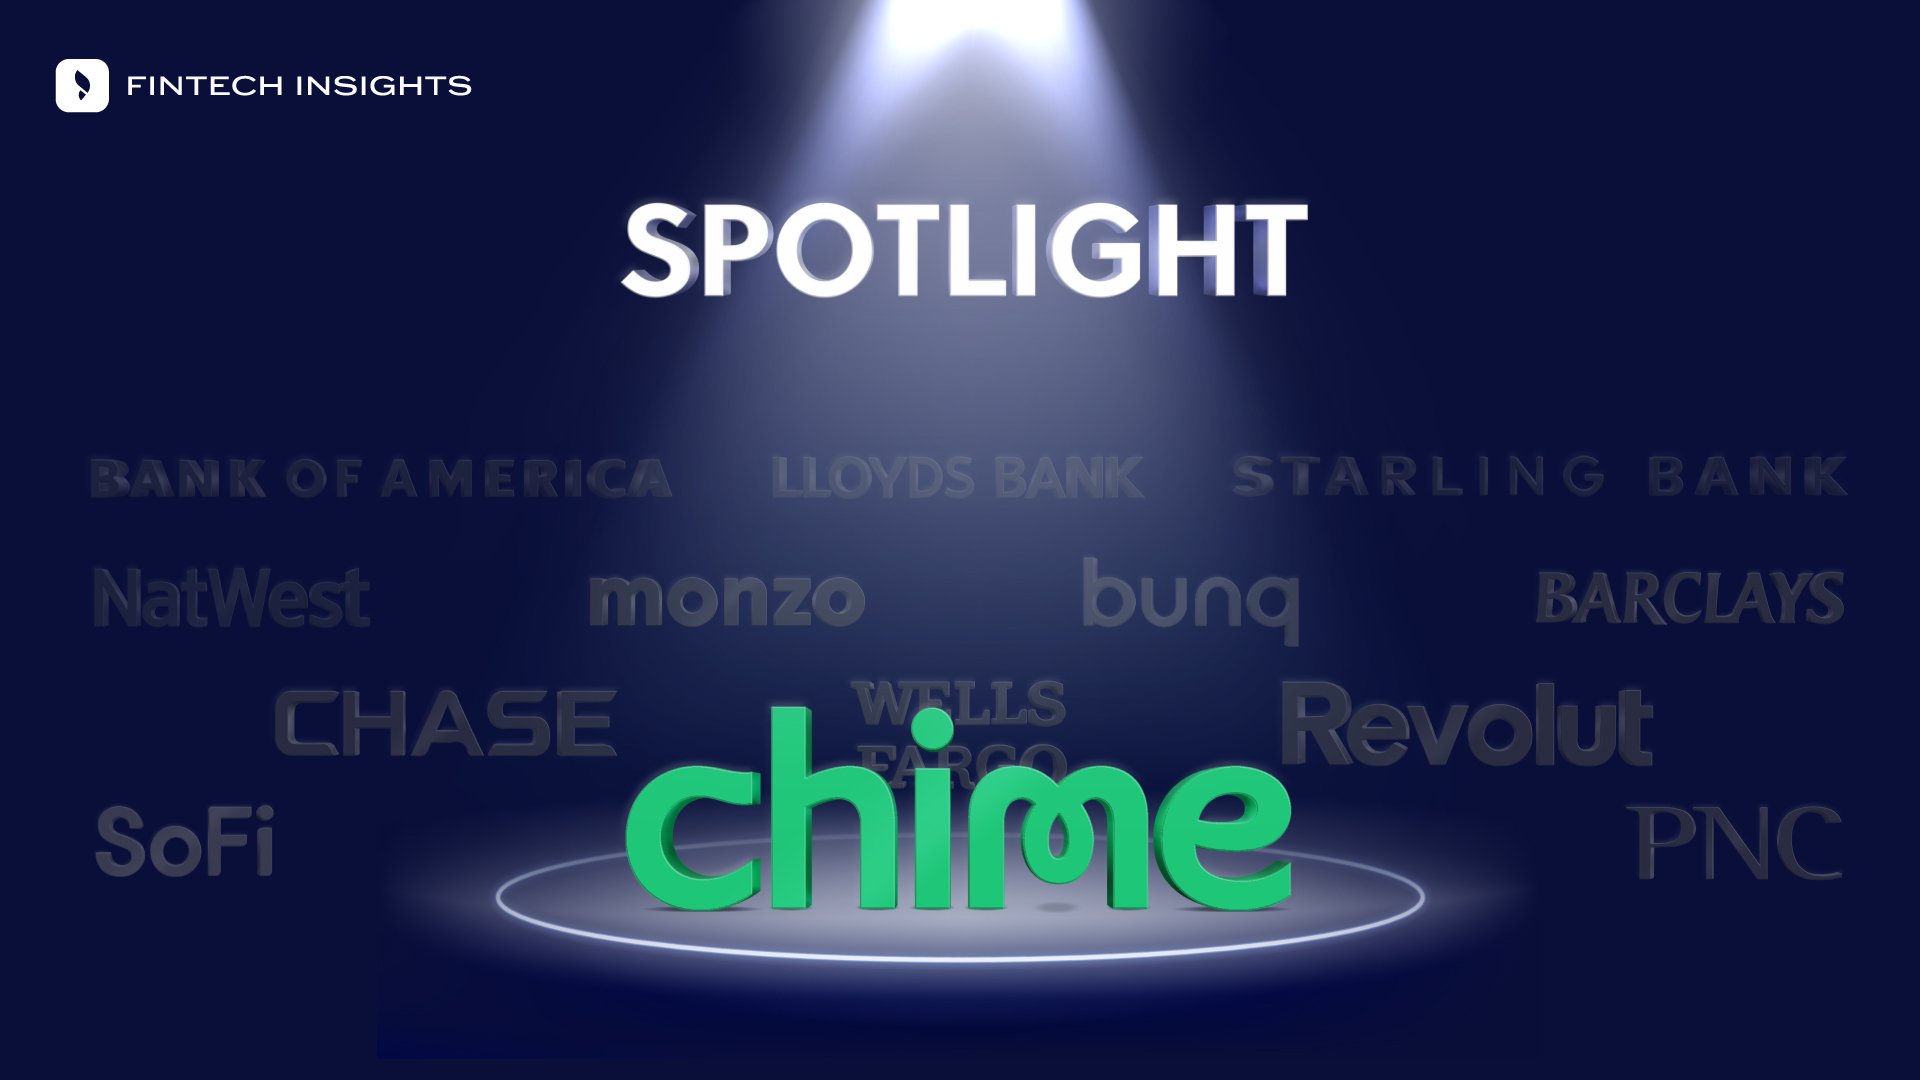 Spotlight falls on Chime